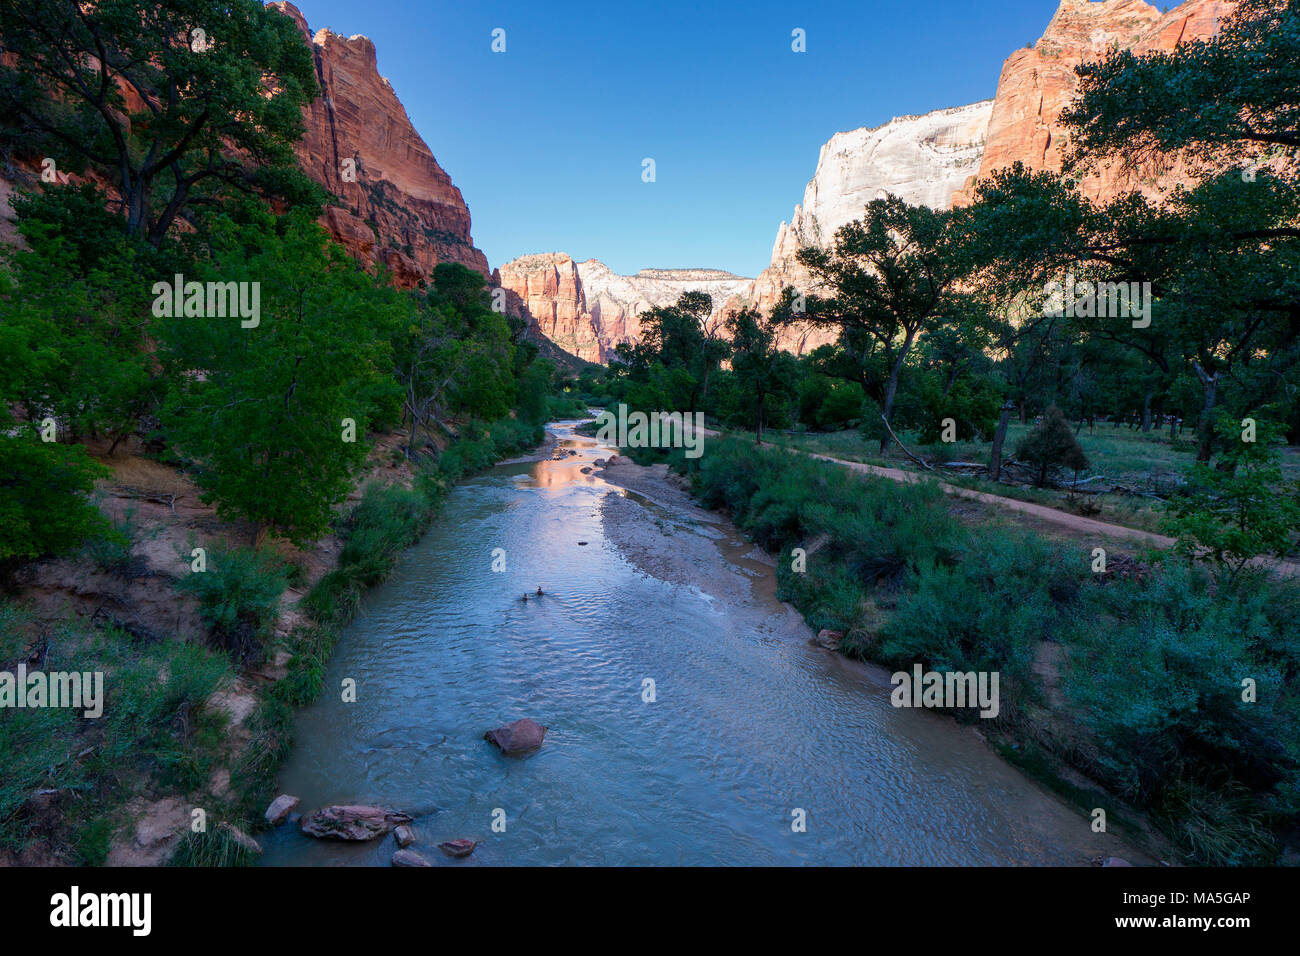 Virgin River, Zion National Park, Springdale, Utah, USA Stockfoto